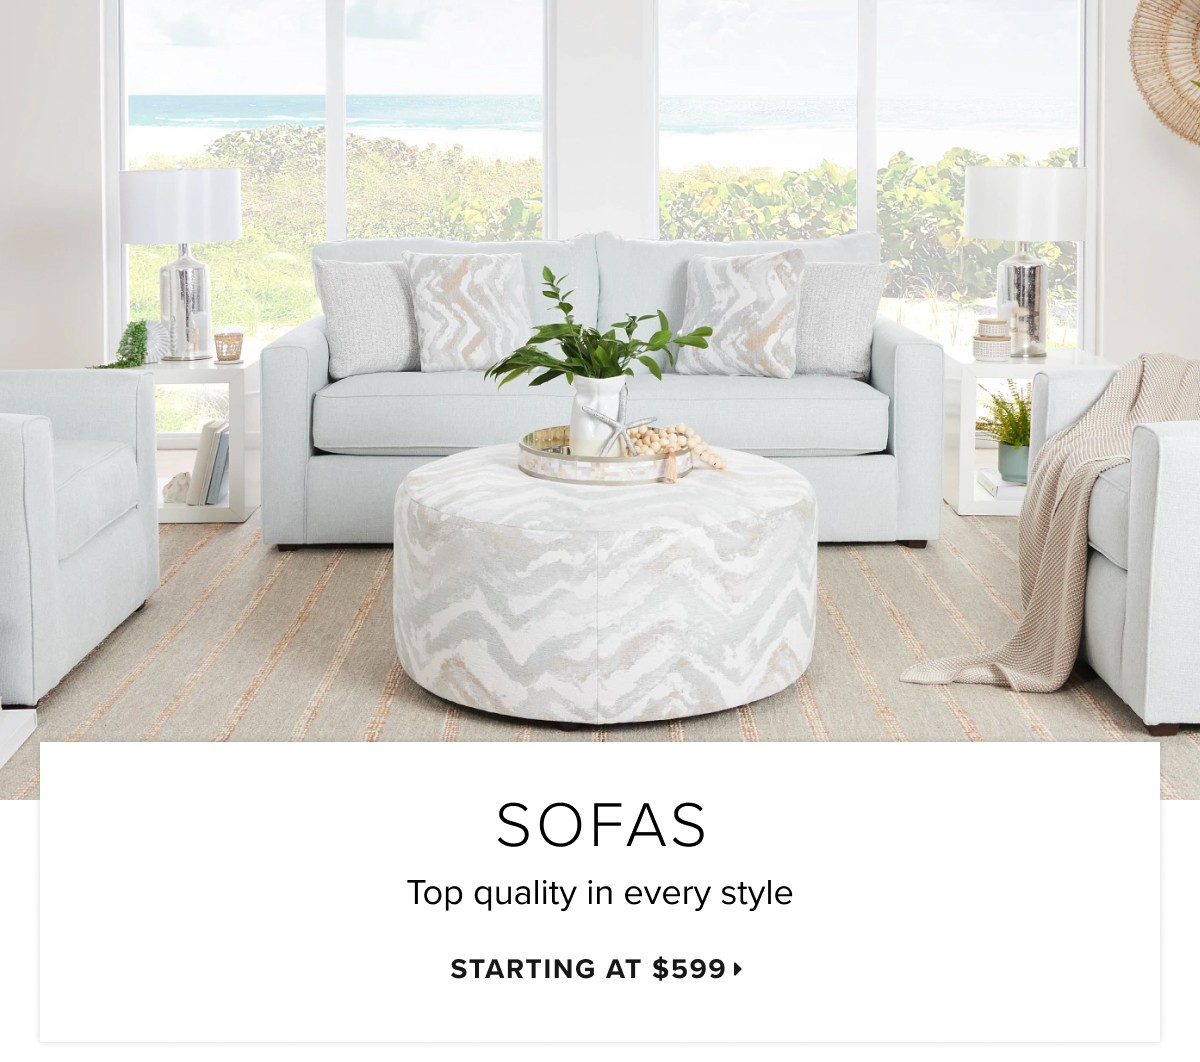 Sofas starting at $599 >